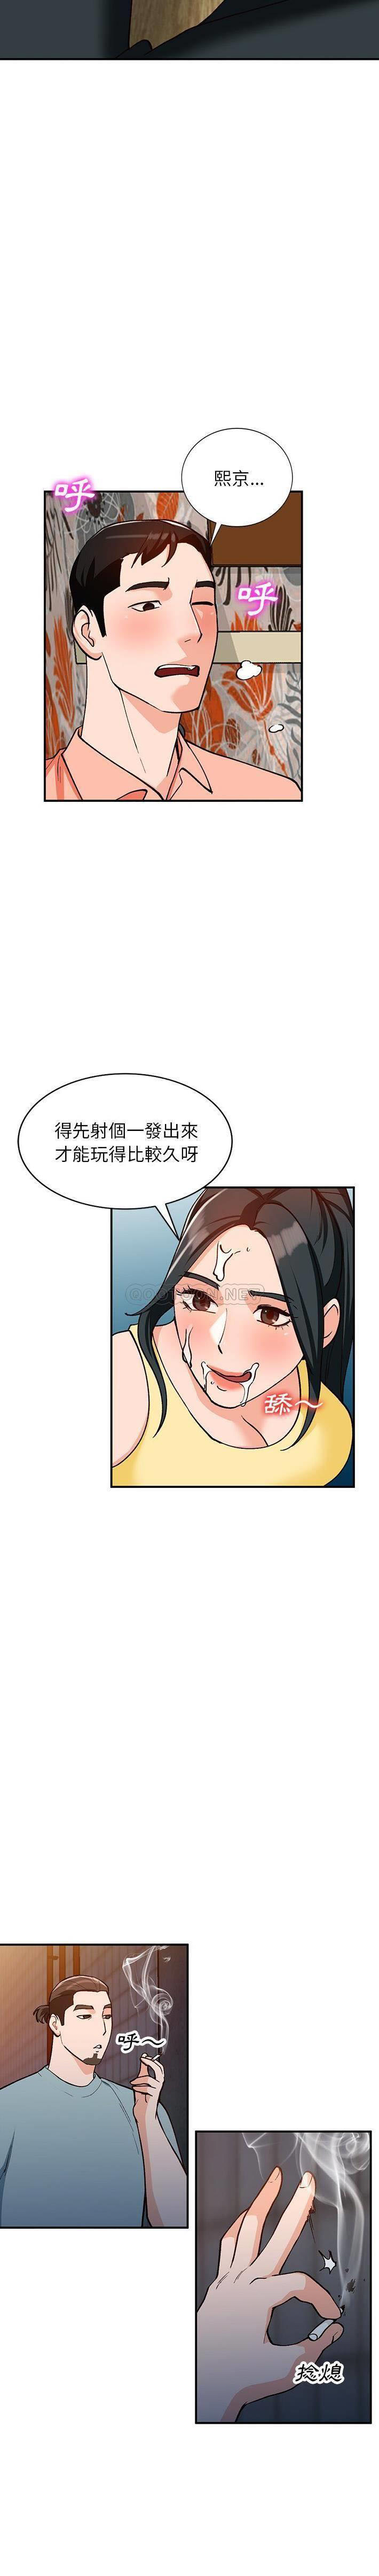 韩国污漫画 她們的小秘密(小鎮上的女人們) 第30话 18